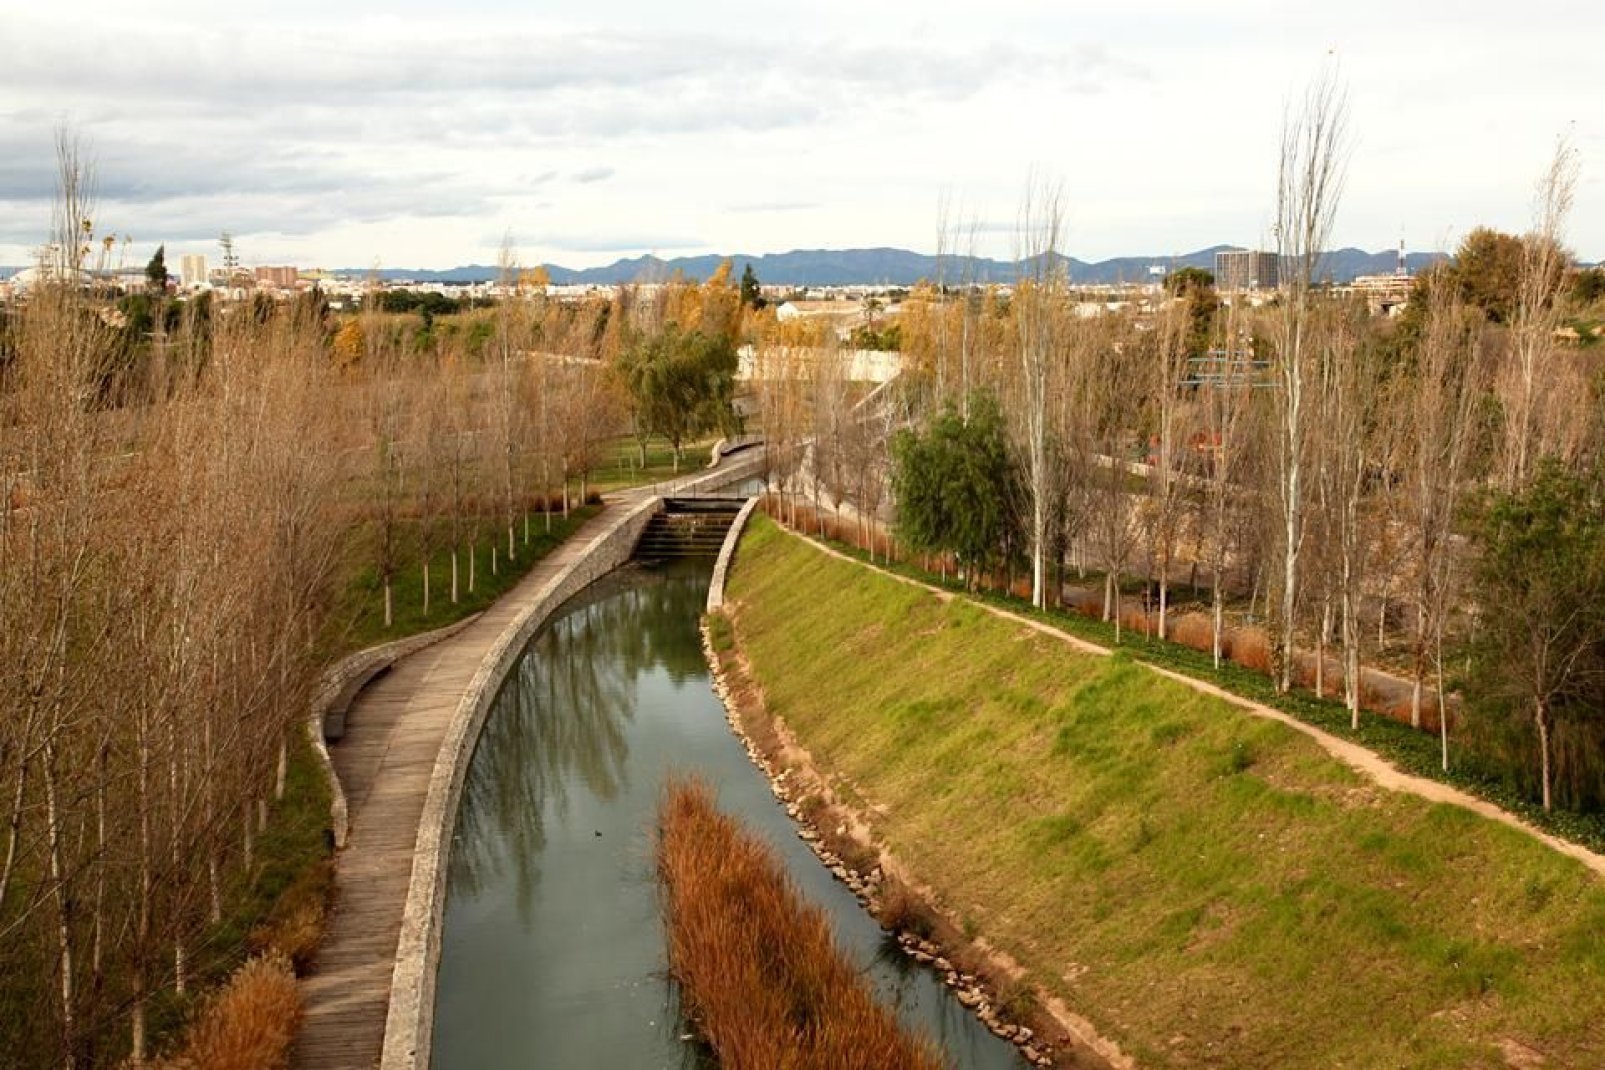 Les jardins de la Turia (surnommé « el rio » par les habitants) sont un lieu de promenade très apprécié des Valenciens, à pied ou à vélo.